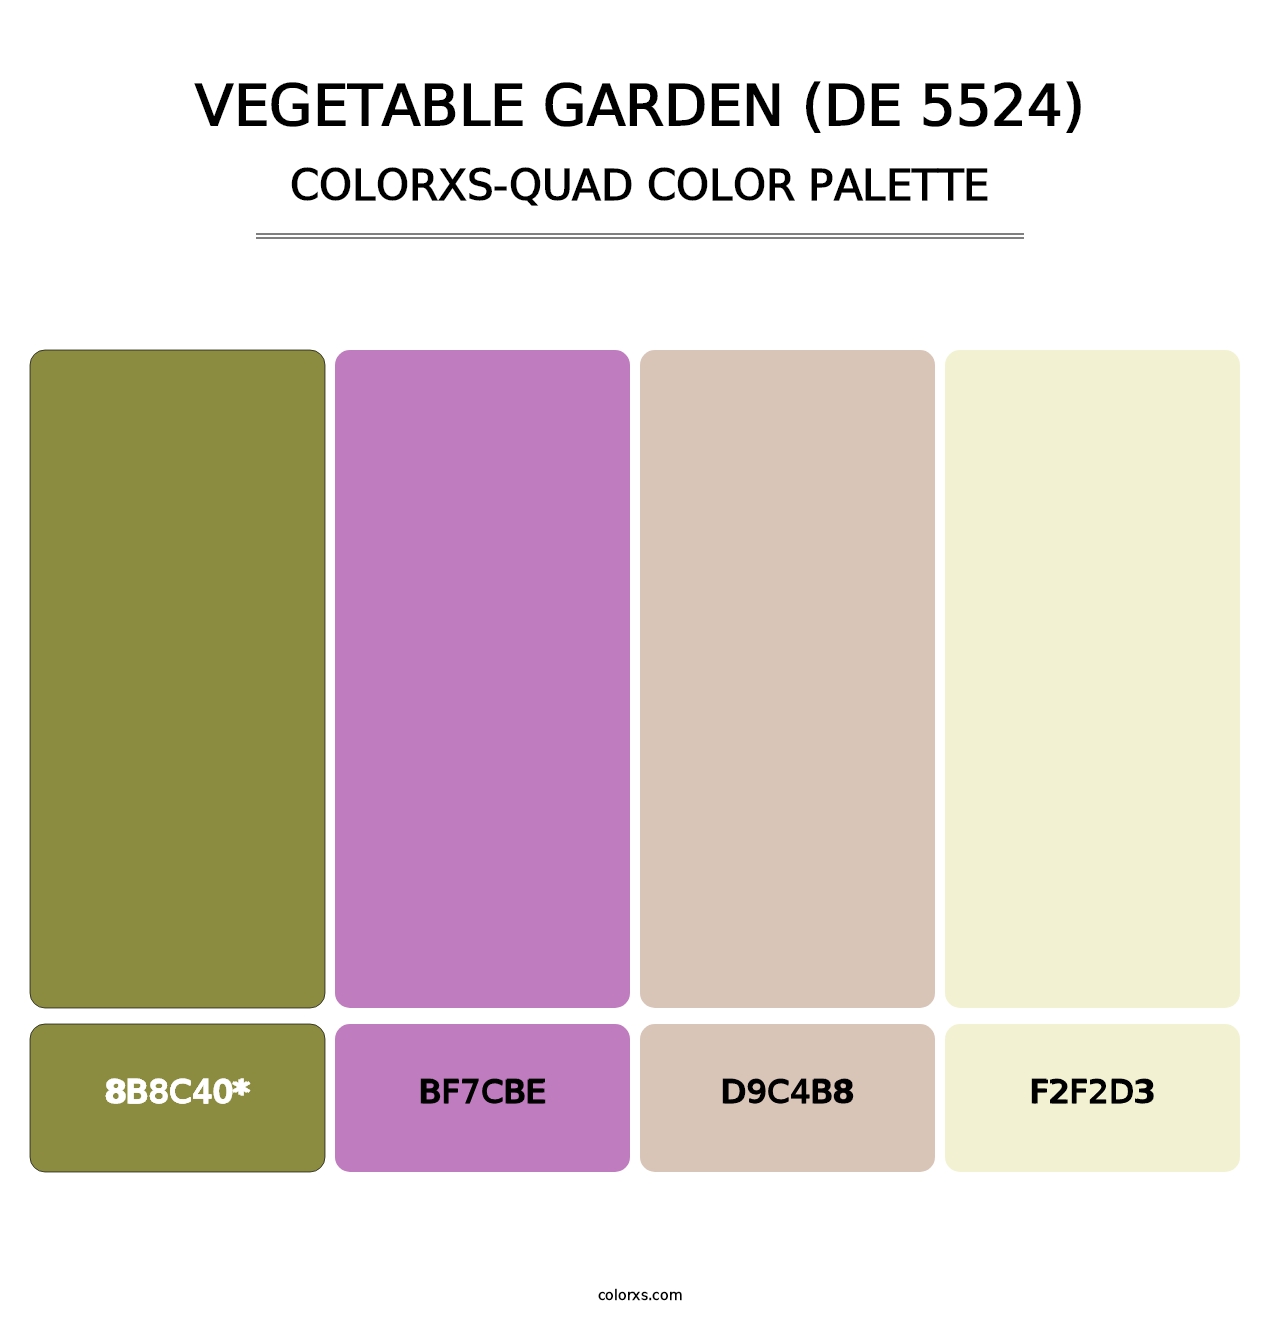 Vegetable Garden (DE 5524) - Colorxs Quad Palette